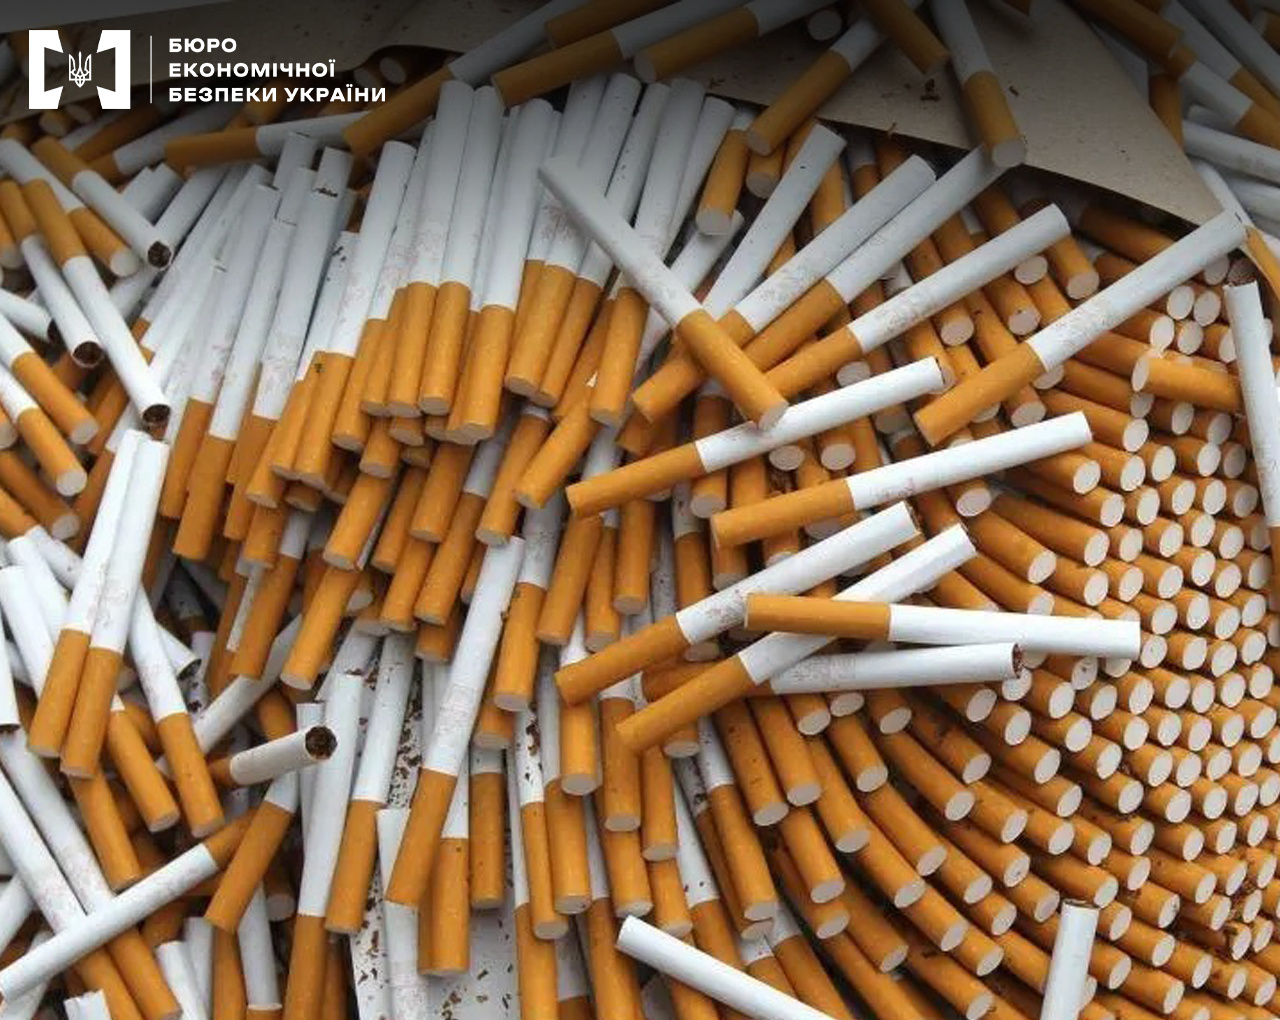 Бюро економічної безпеки скерувало до суду справу за зберігання контрафактних сигарет